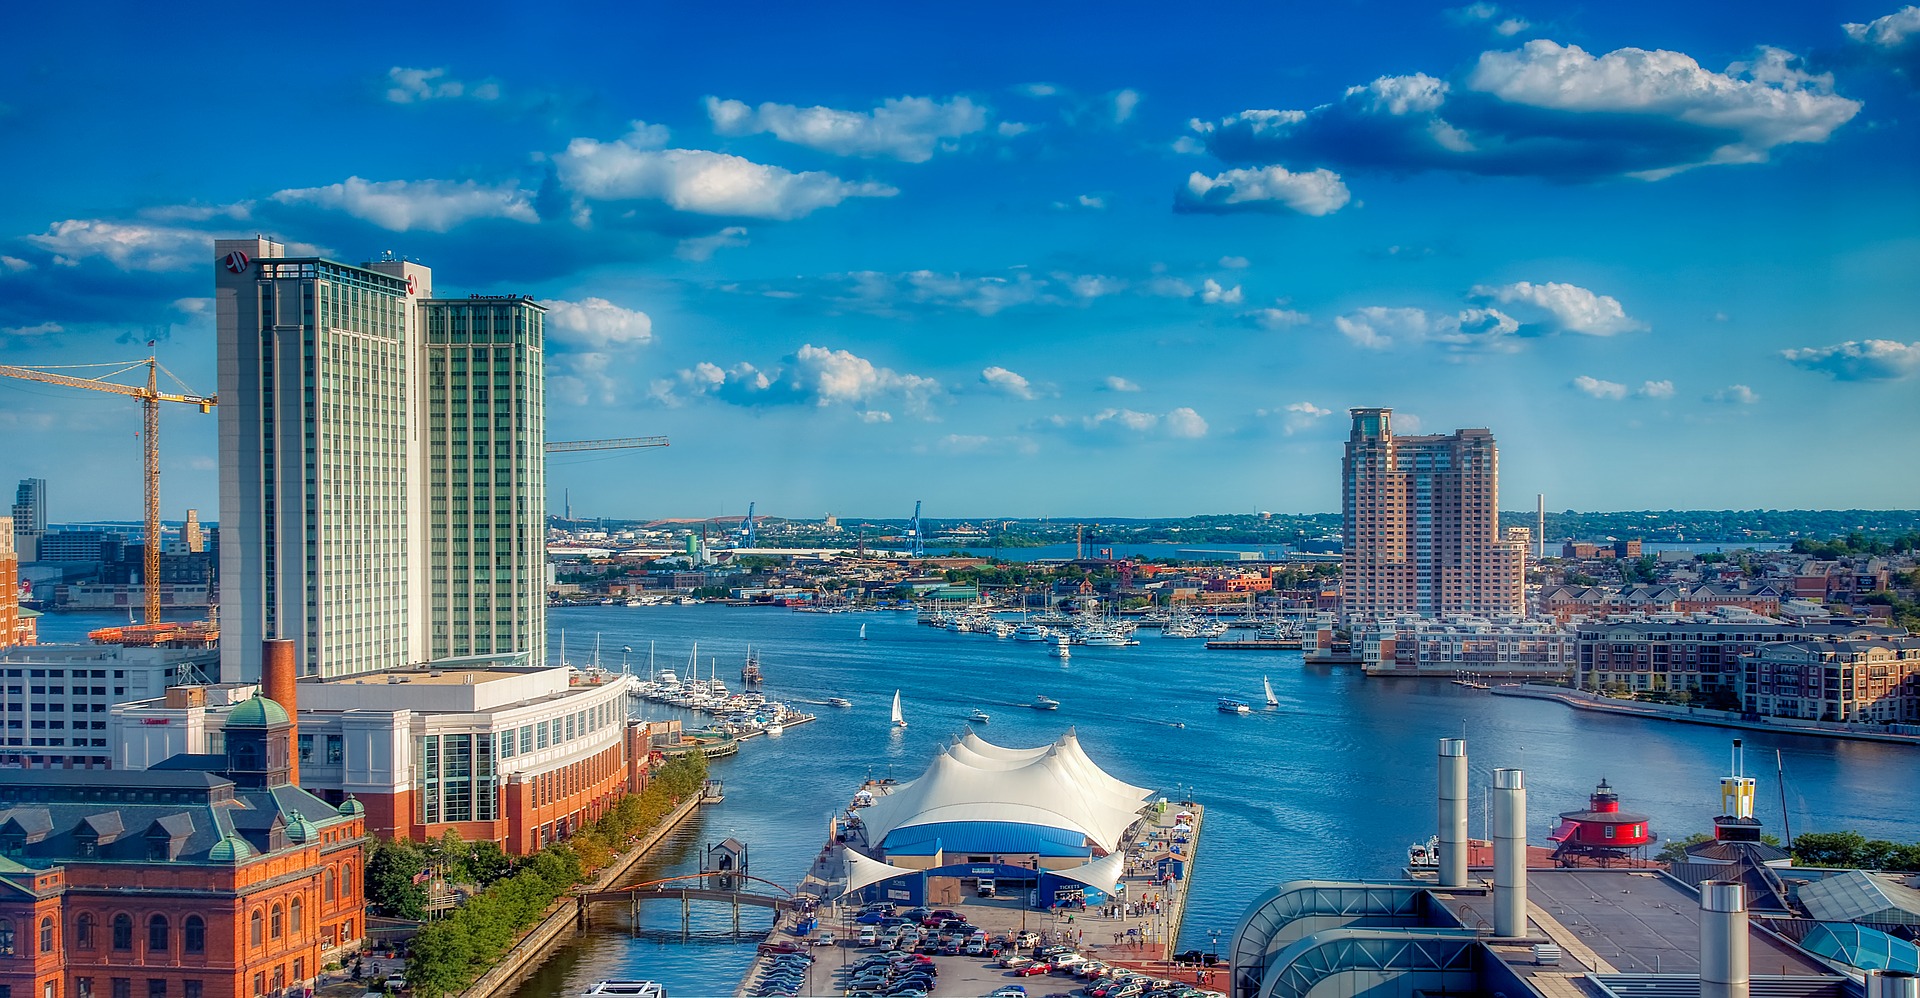 Verenigde-Staten-Baltimore-cruise-haven-stad-uitzicht